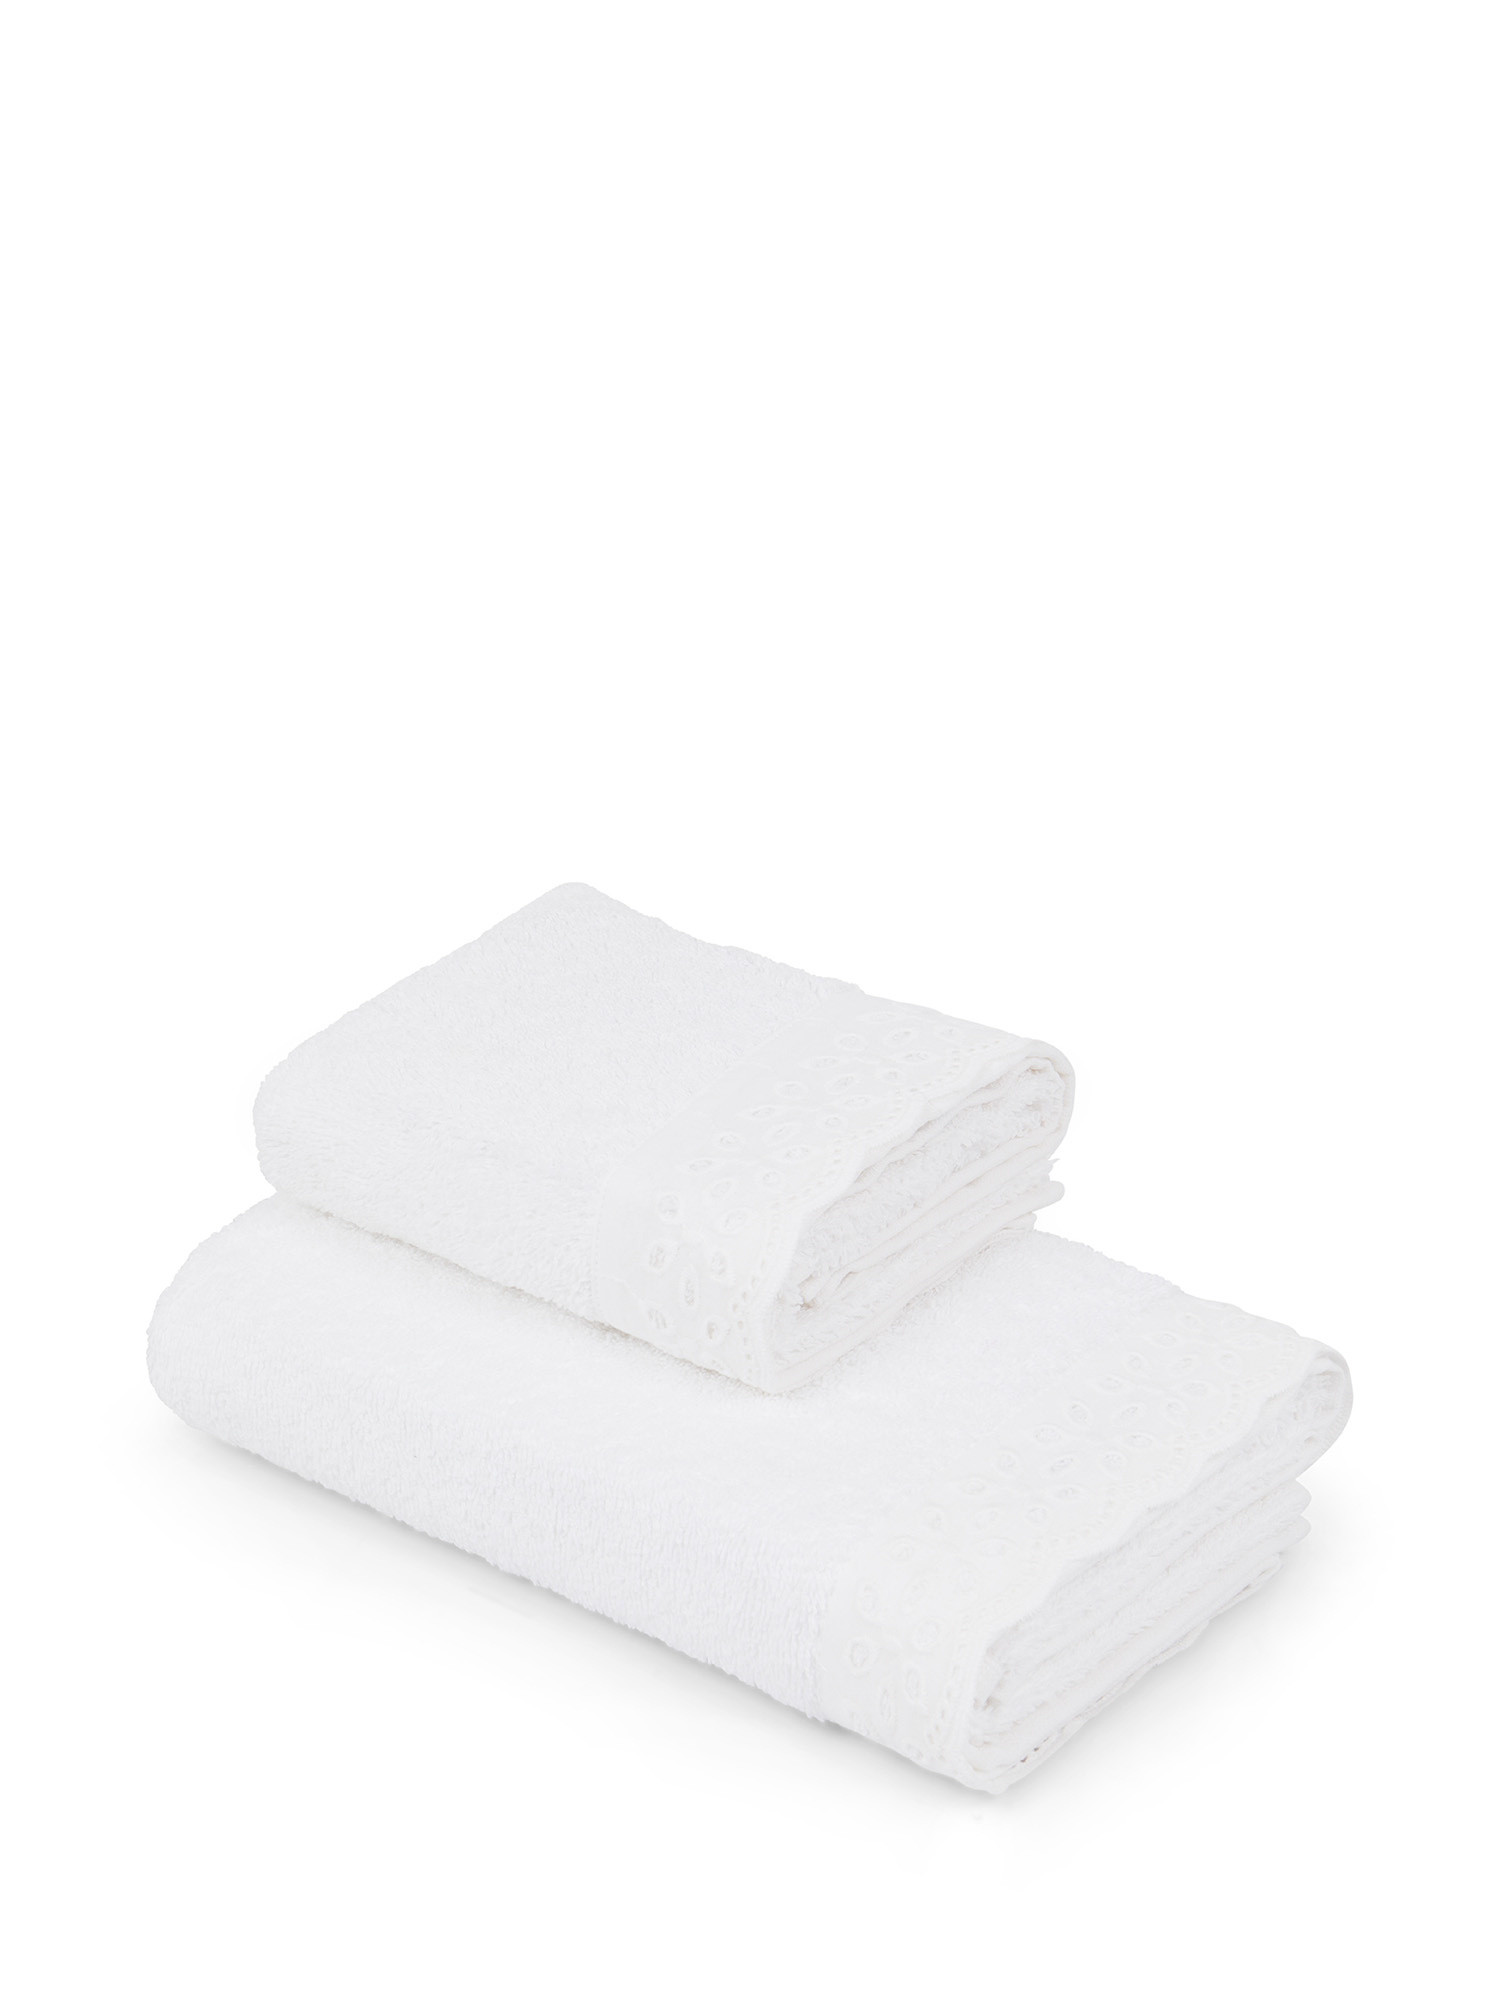 Asciugamano in spugna di cotone con bordo Sangallo, Bianco, large image number 0